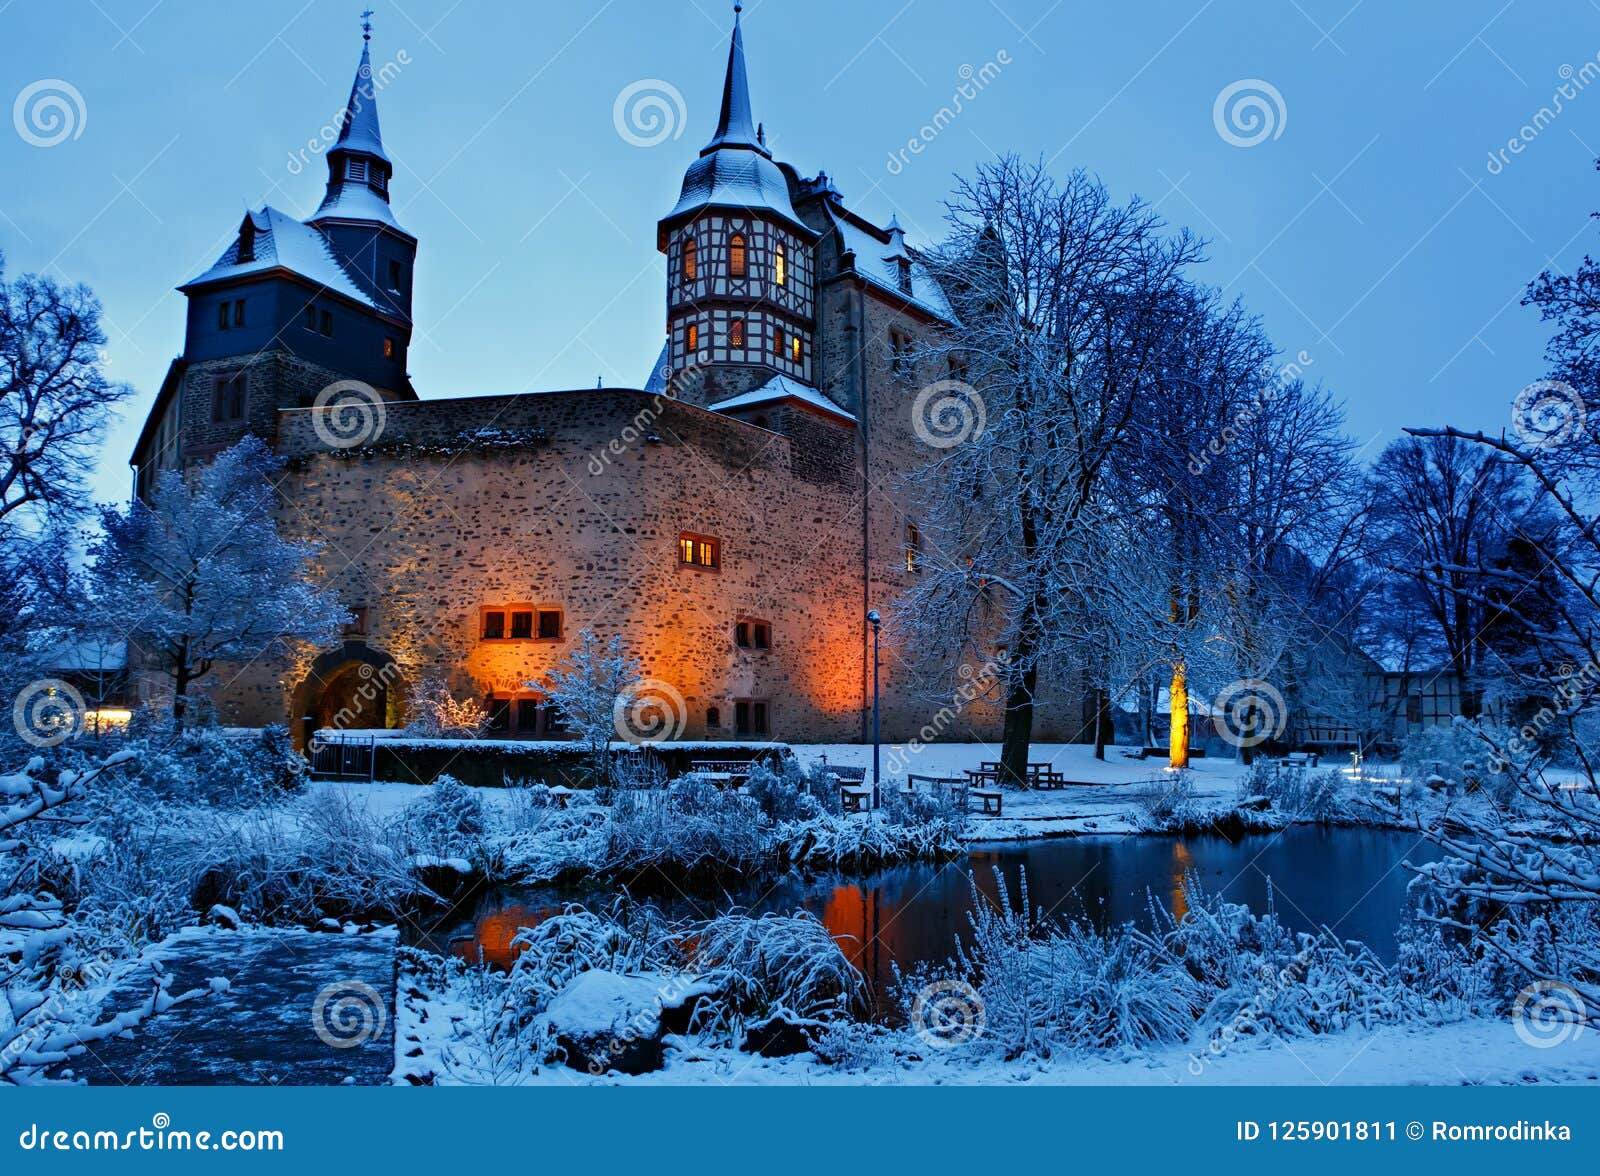 german fairytale castle in winter landscape. castle romrod in hessen, germany